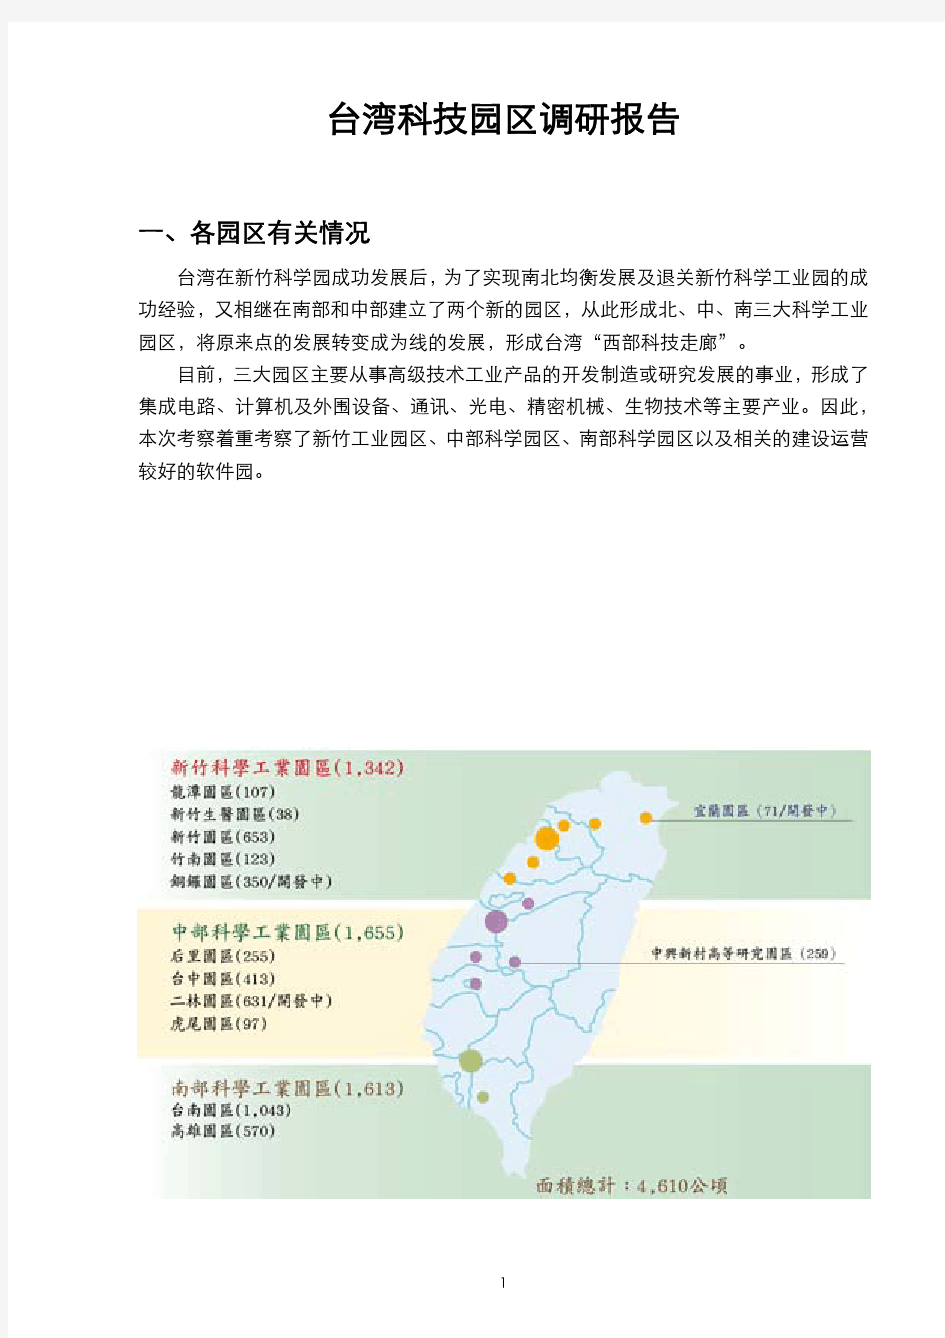 台湾科技园区调研报告教程